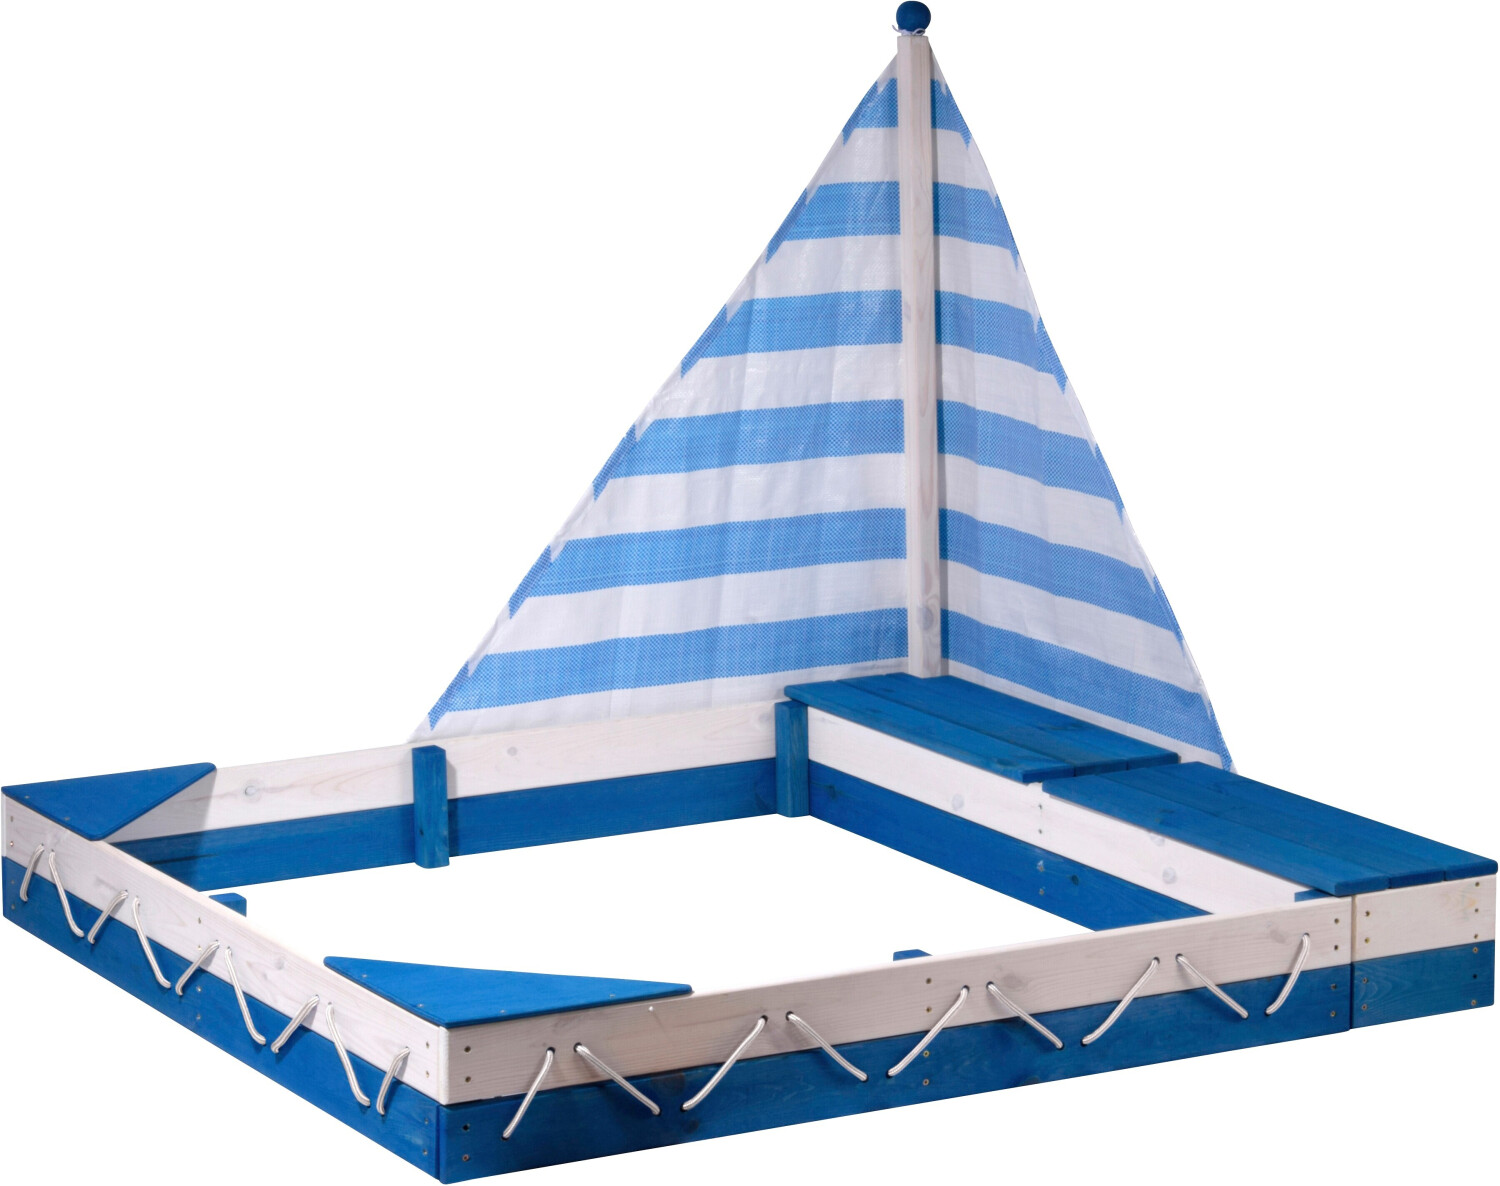 Dobar Sandkasten Segel Maritim 104,99 € Preisvergleich zwei Spielzeugkisten und 138,5x115,5cm | mit bei ab